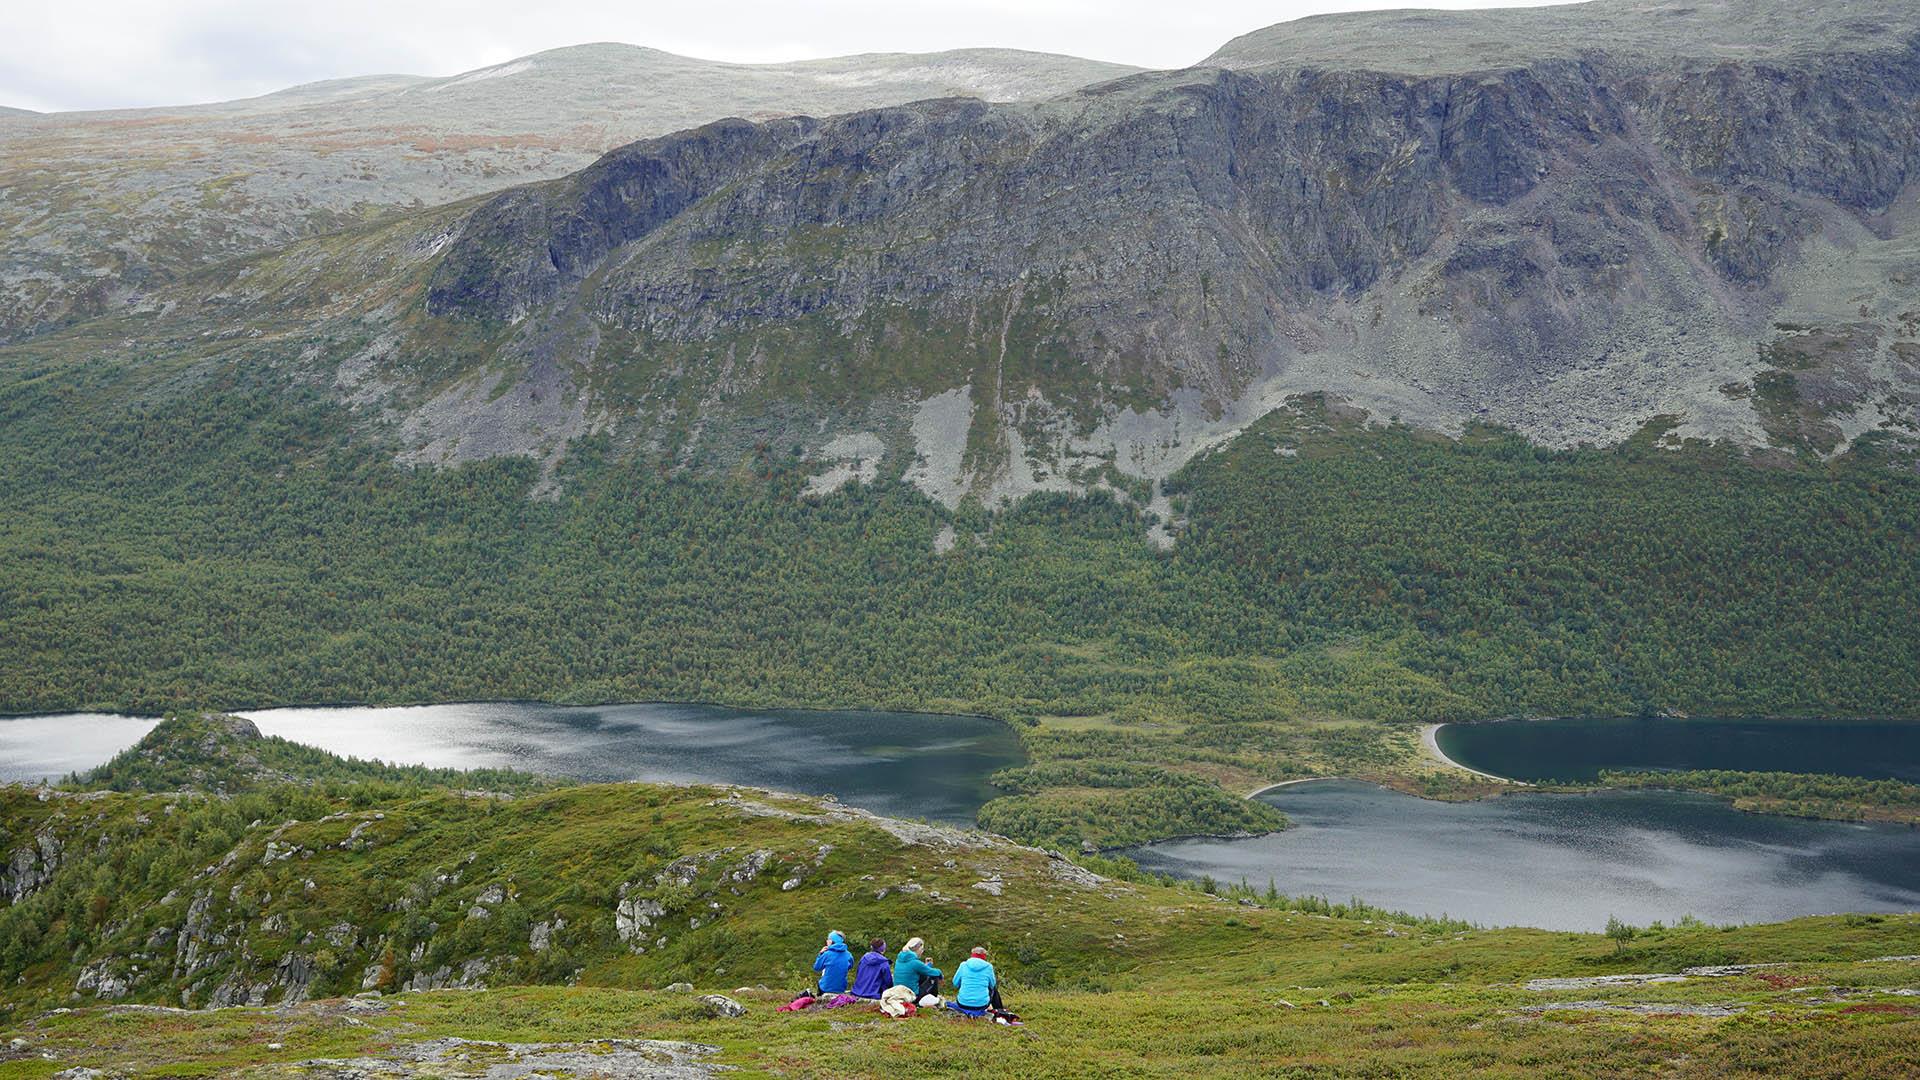 Fire personer sitter i lyngen og nyter et mektig landskap rundt, med vann og bratte fjellskrenter.